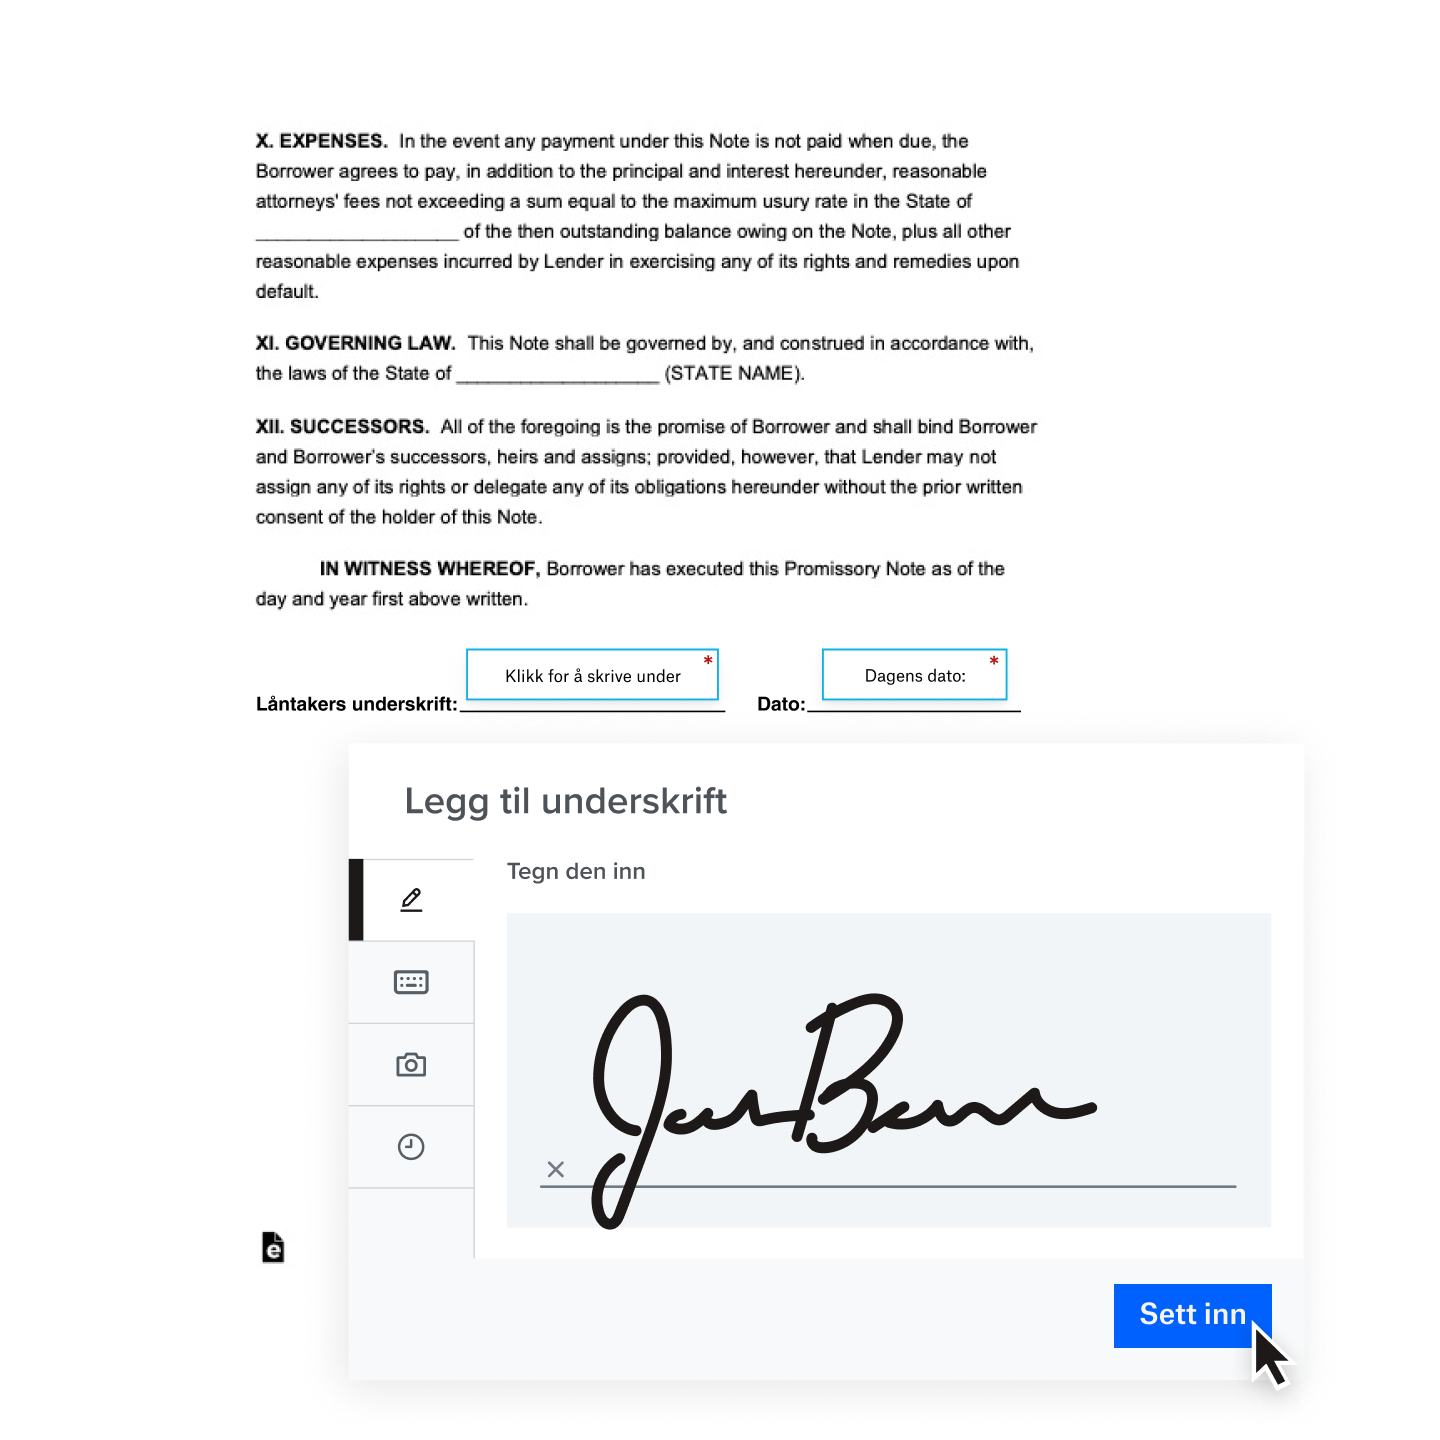 En håndskreven digital underskrift blir lagt til i en kontrakt